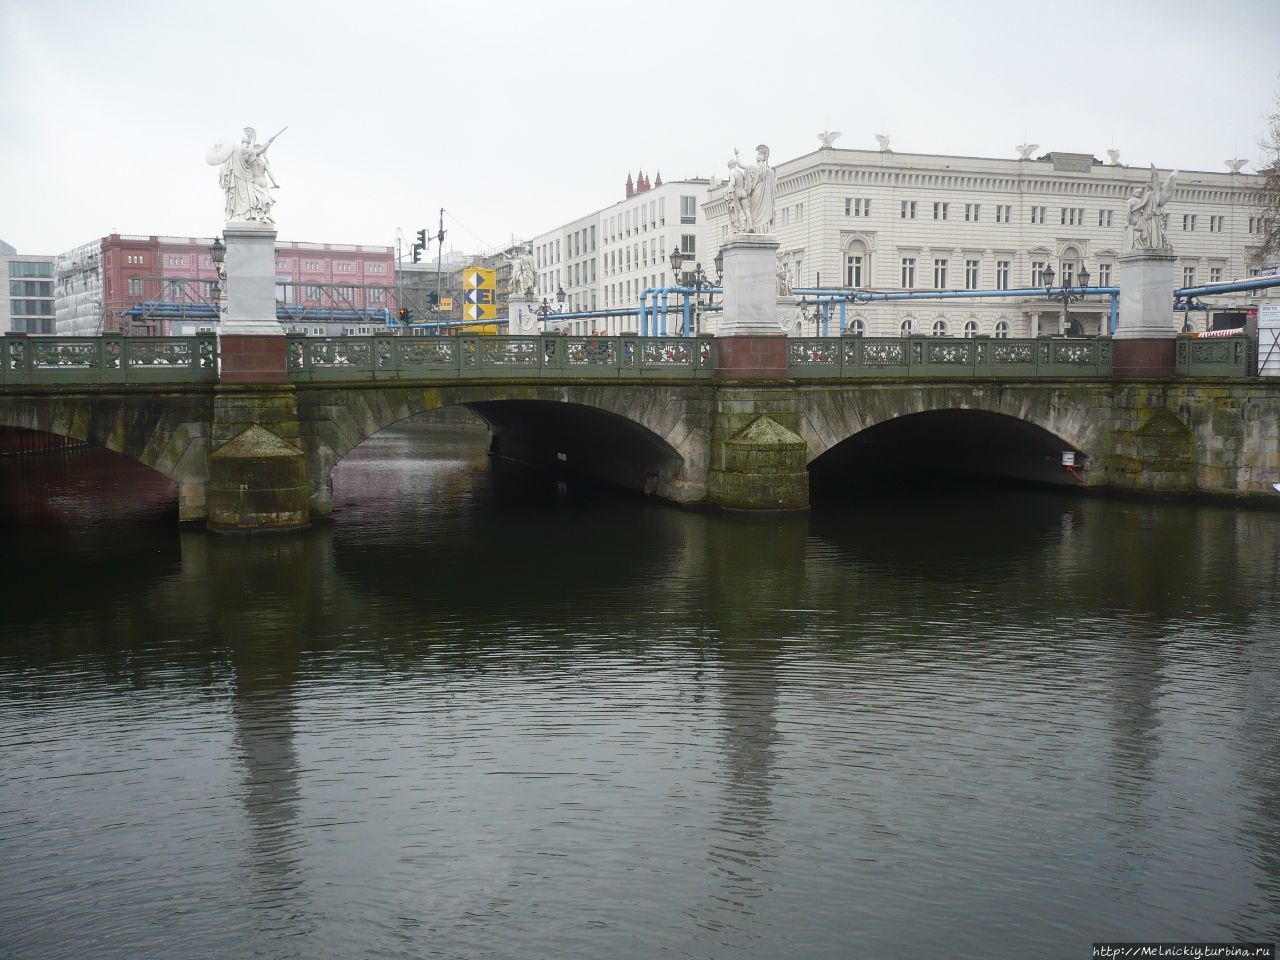 Дворцовый мост / Schloßbrücke